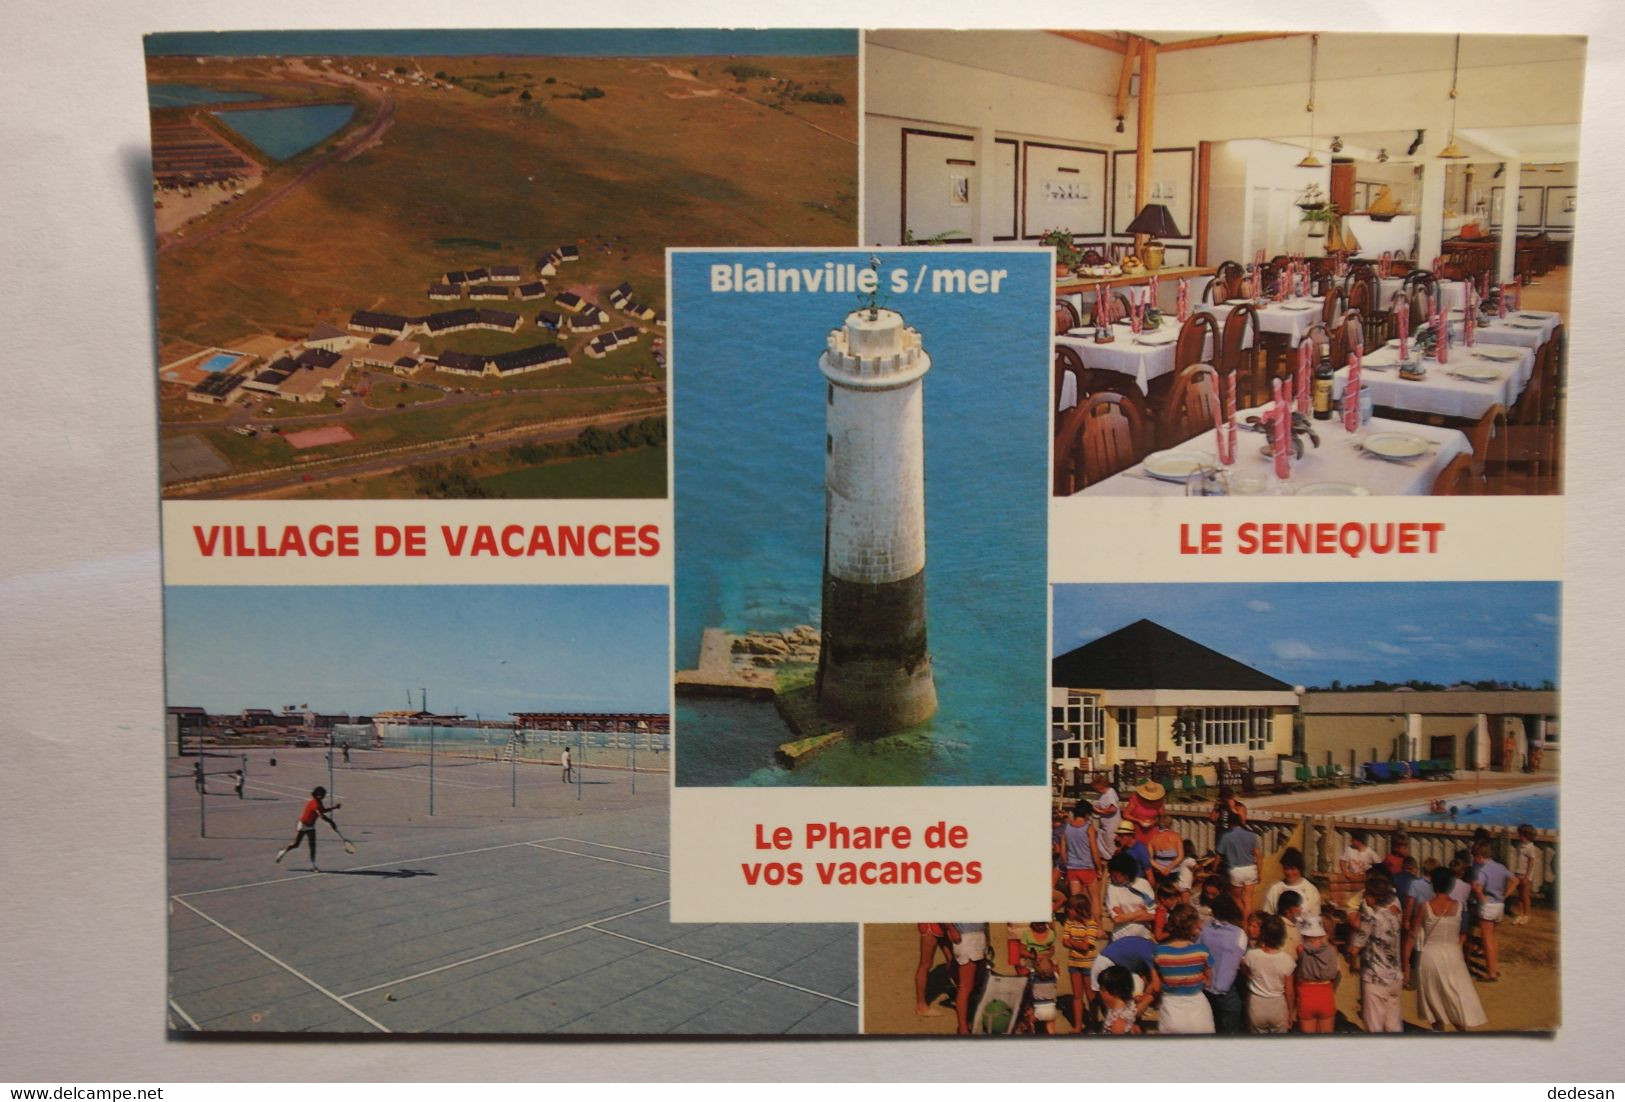 Cpsm Grand Format Blainville S/ Mer Village De Vacances Le Senequet - NOU77 - Blainville Sur Mer